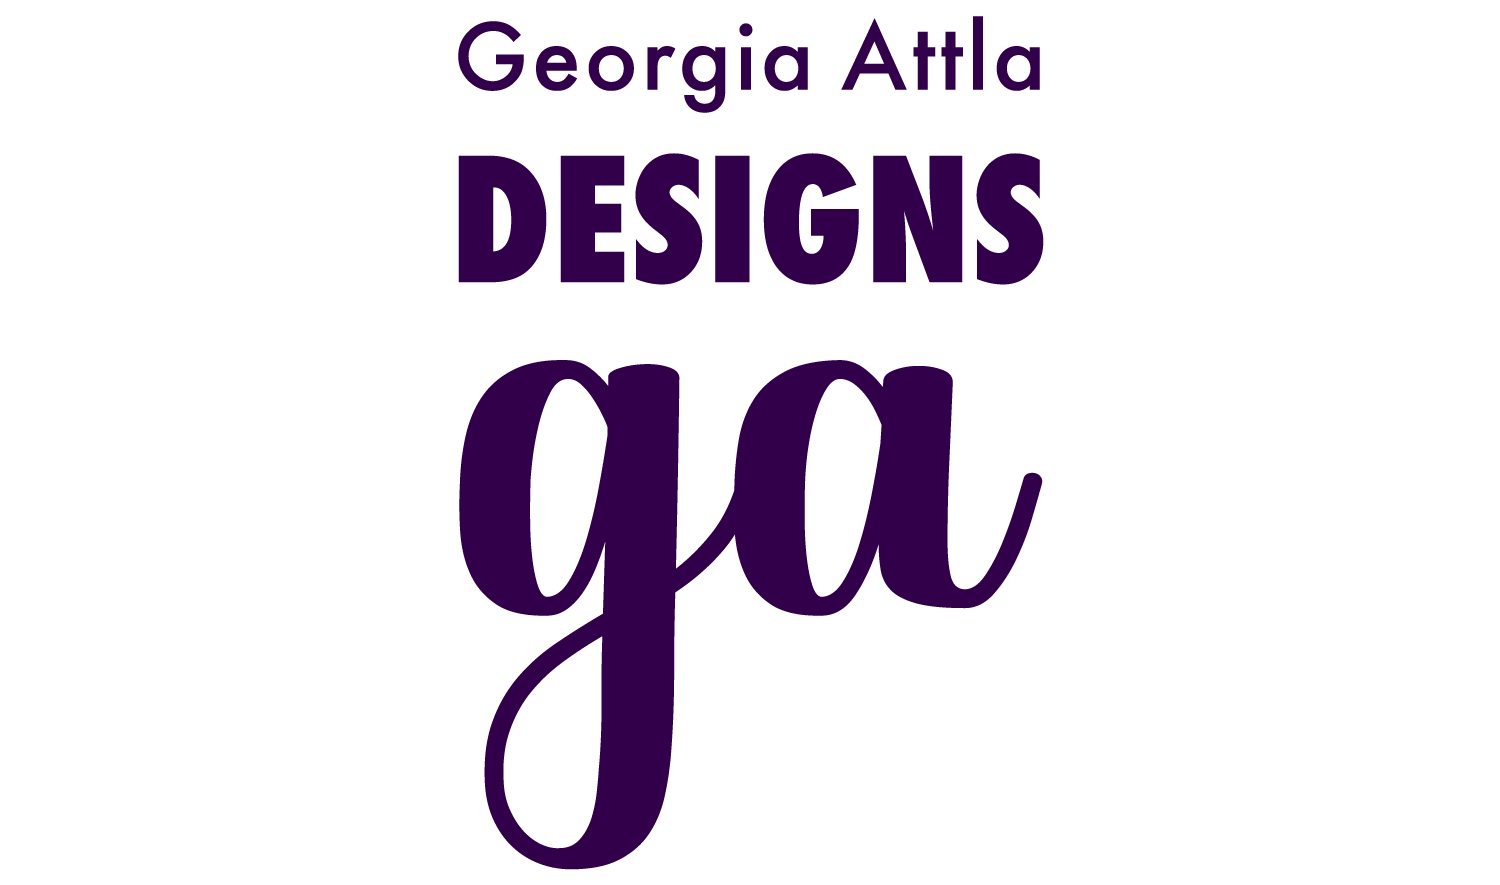 Georgia Attla Designs